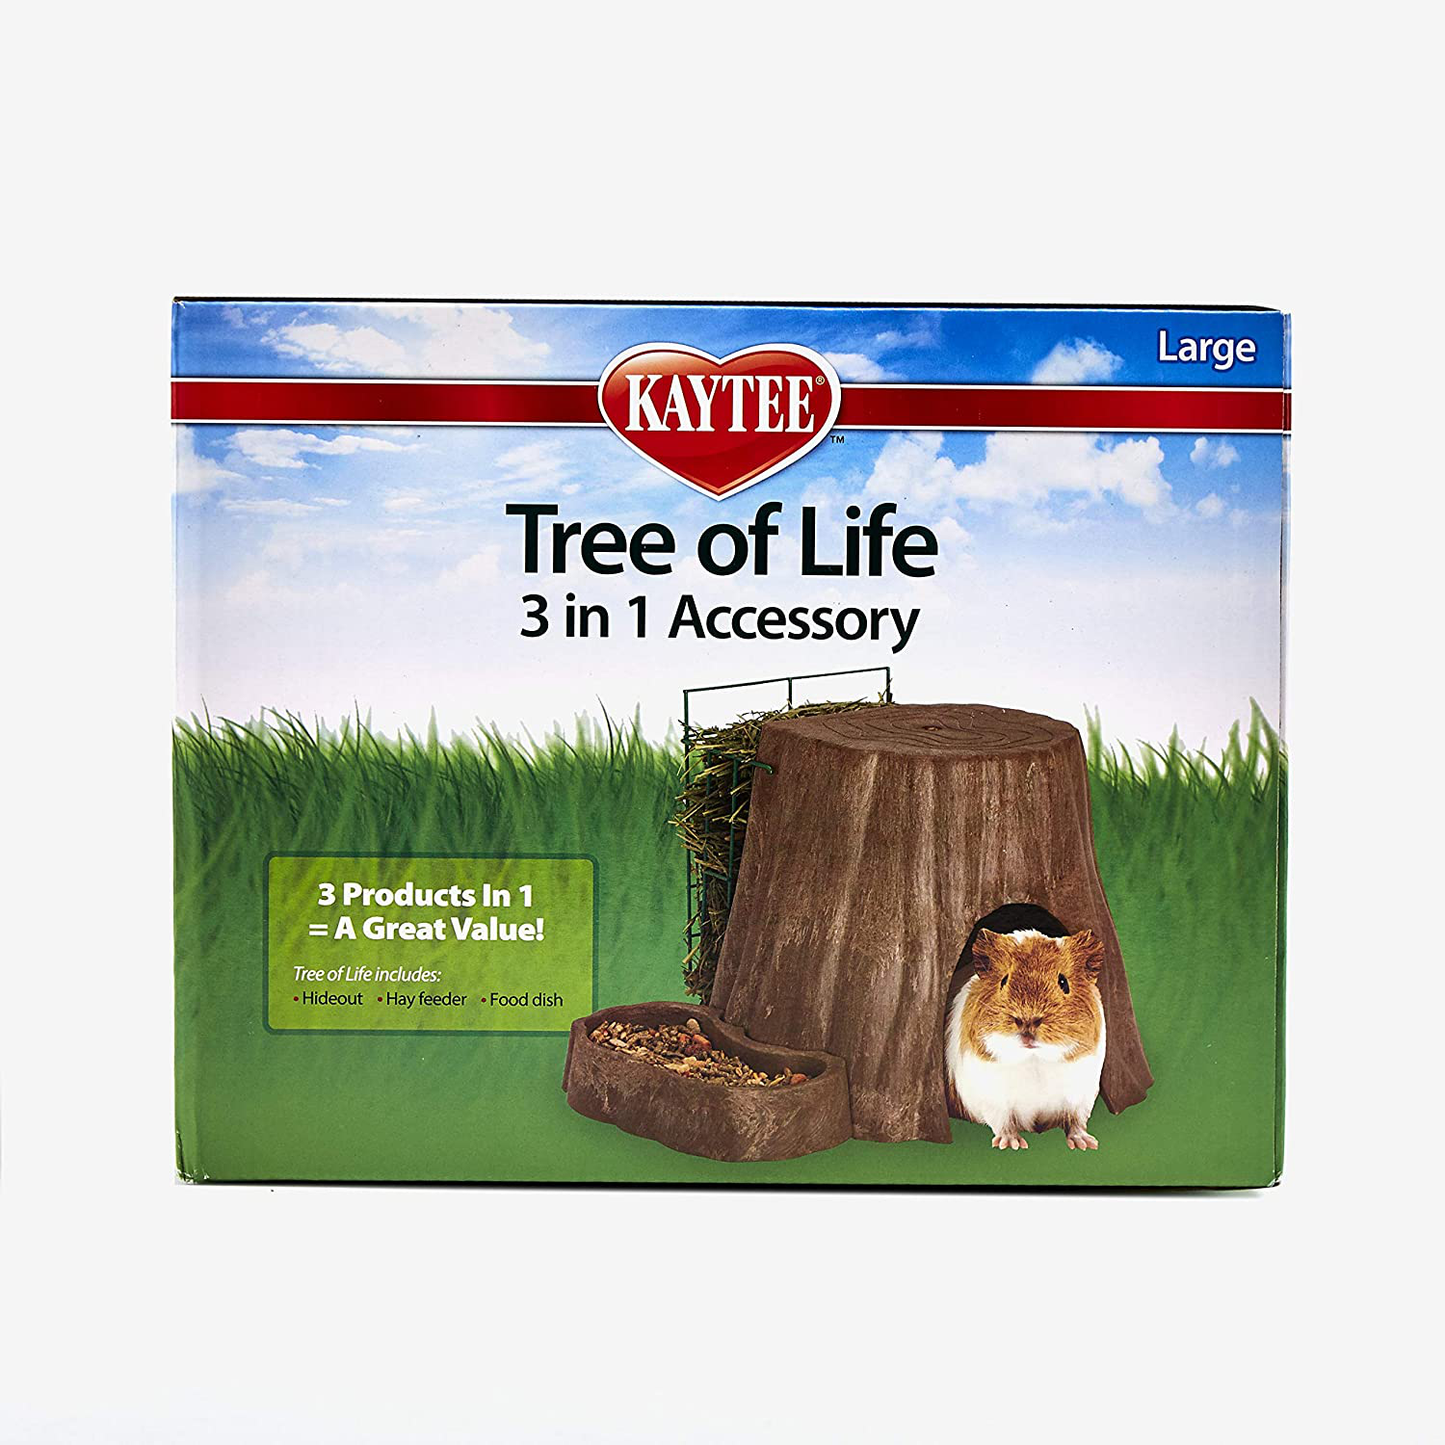 Kaytee Tree of Life 3 in 1 Accessory